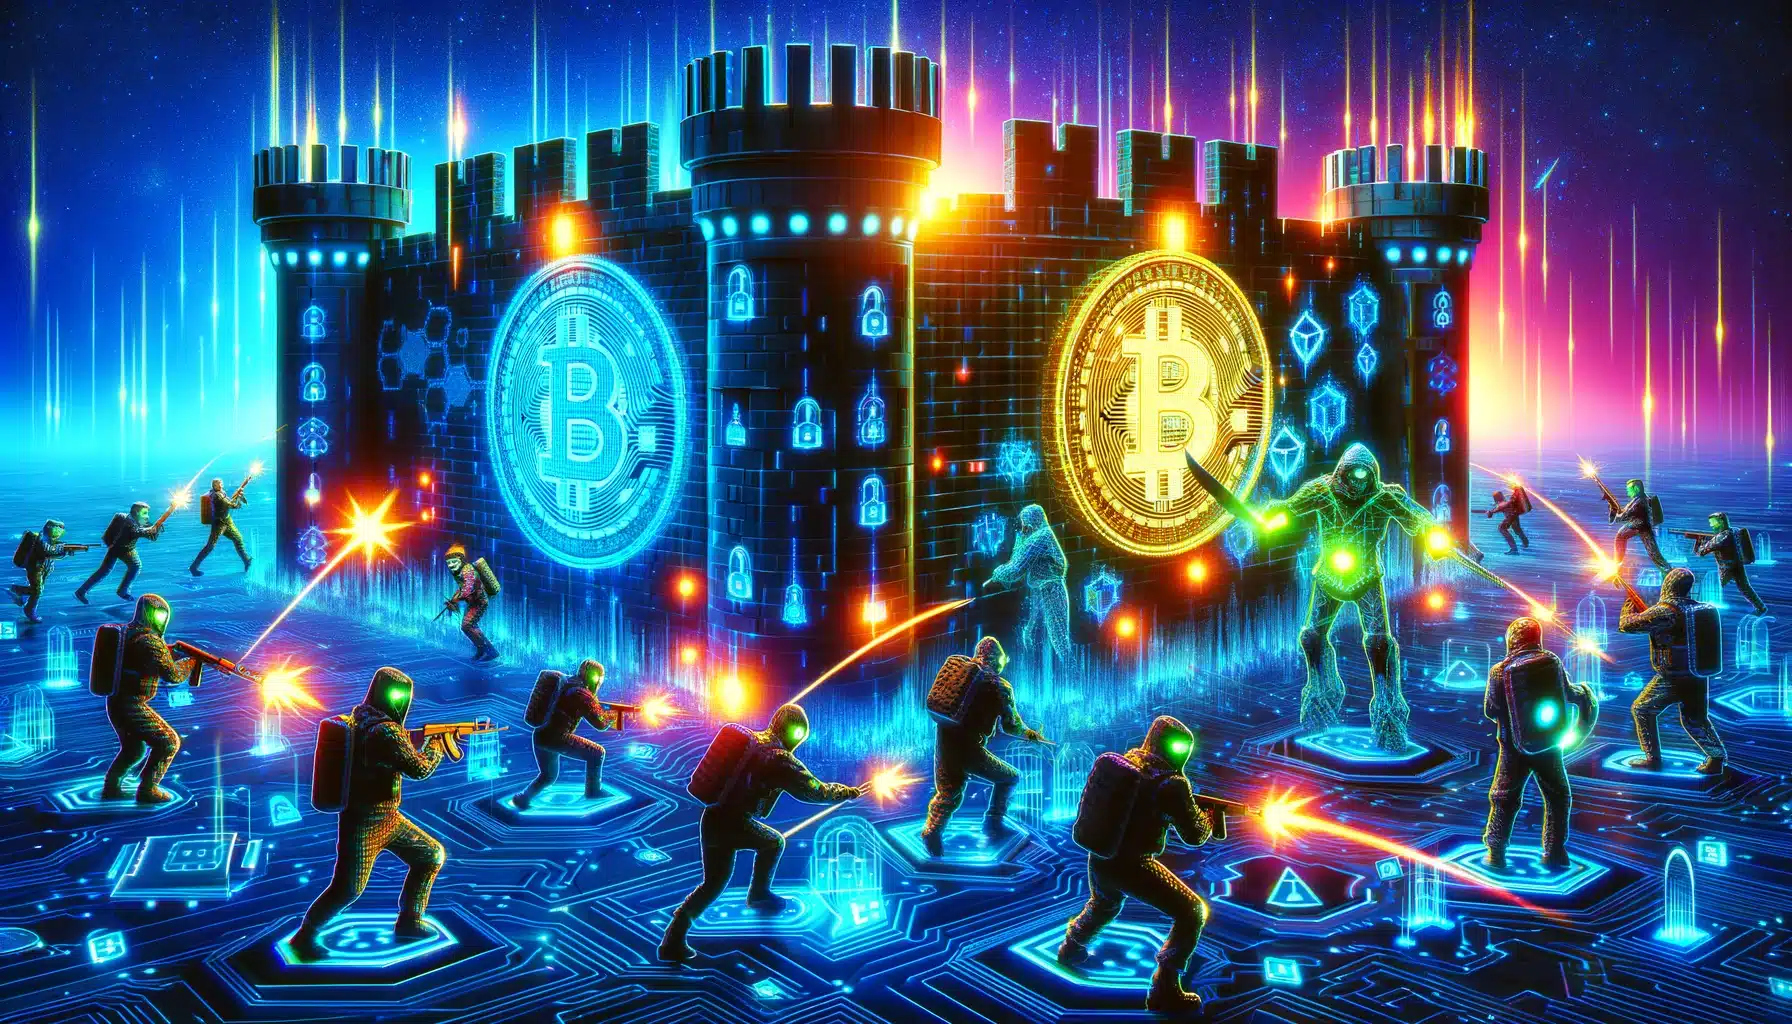 Cette image représente un champ de bataille numérique éclatant où des pirates cybernétiques vêtus de néon, équipés d'outils de piratage et d'armes lumineuses, lancent un assaut contre une forteresse numérique imprenable qui incarne le concept de la technologie blockchain. La forteresse émet une forte lumière bleue, arborant le logo emblématique du Bitcoin, renforçant son rôle de bastion de la monnaie numérique. Les couleurs vives, des attaques lumineuses des pirates aux boucliers défensifs de la forteresse, créent une scène dynamique qui encapsule la lutte continue entre la cybersécurité et les menaces numériques.